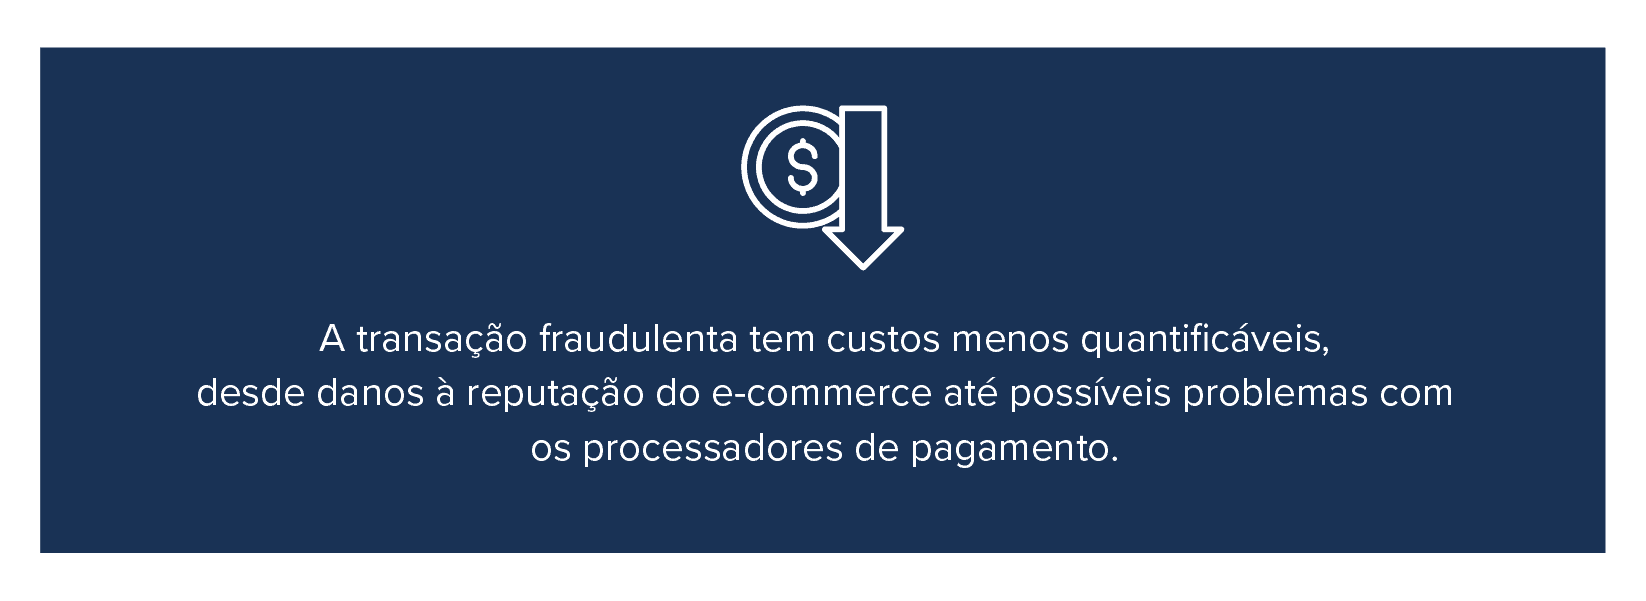 Fraude causa danos à reputação do e-commerce